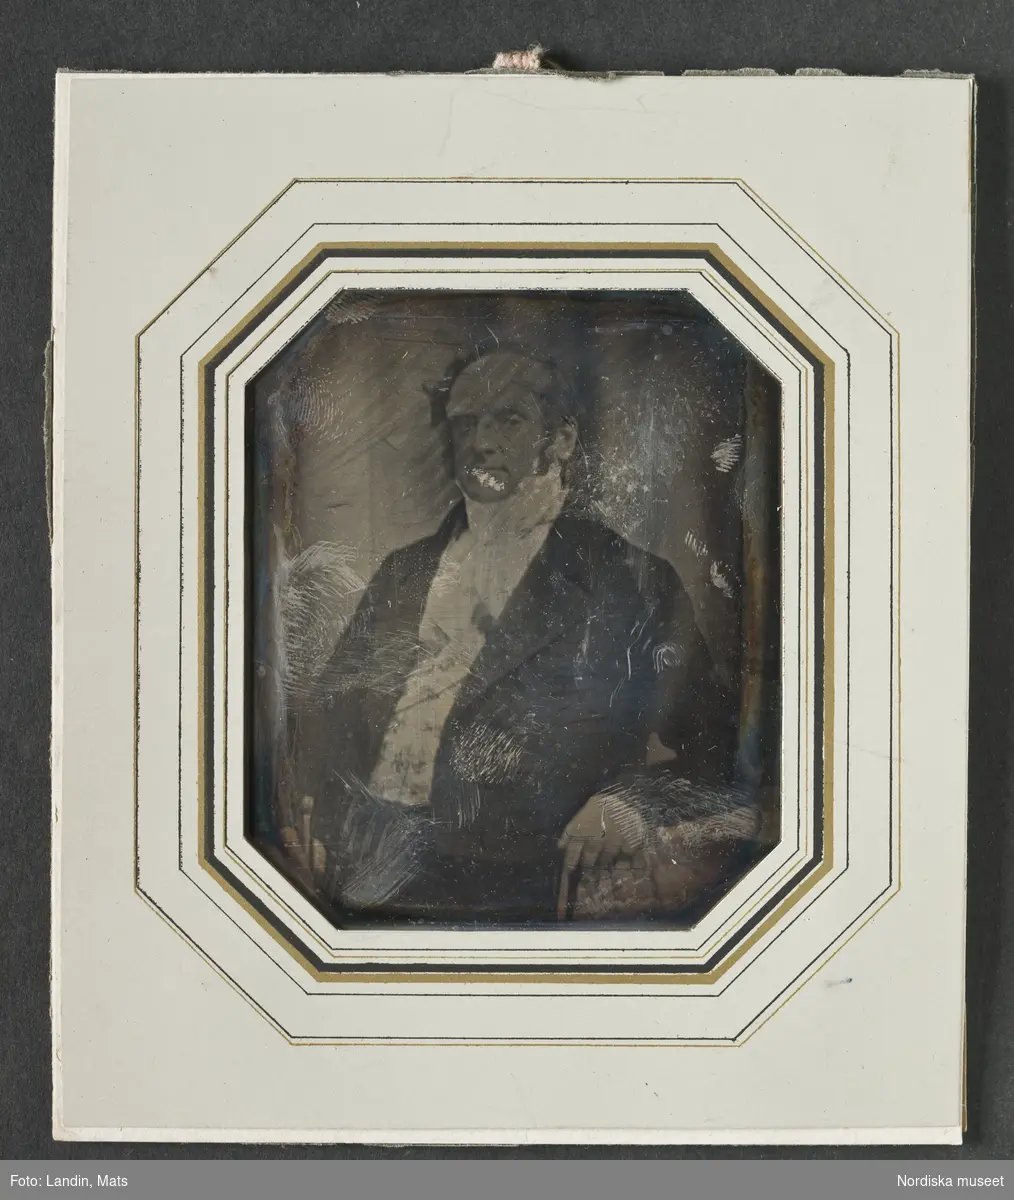 Porträtt av lagman Olof Philip Oxehufvud (1797–1857). Grå passepartout m linjerat guld/svart, ögla. Troligen utskuren ur ram. H 12 cm B 10 cm. Dagerrotyp / daguerreotyp. NM inv.nr 314078.
-
Portrait of Olof Philip Oxehufvud (1797–1857). Sixth-plate daguerreotype.